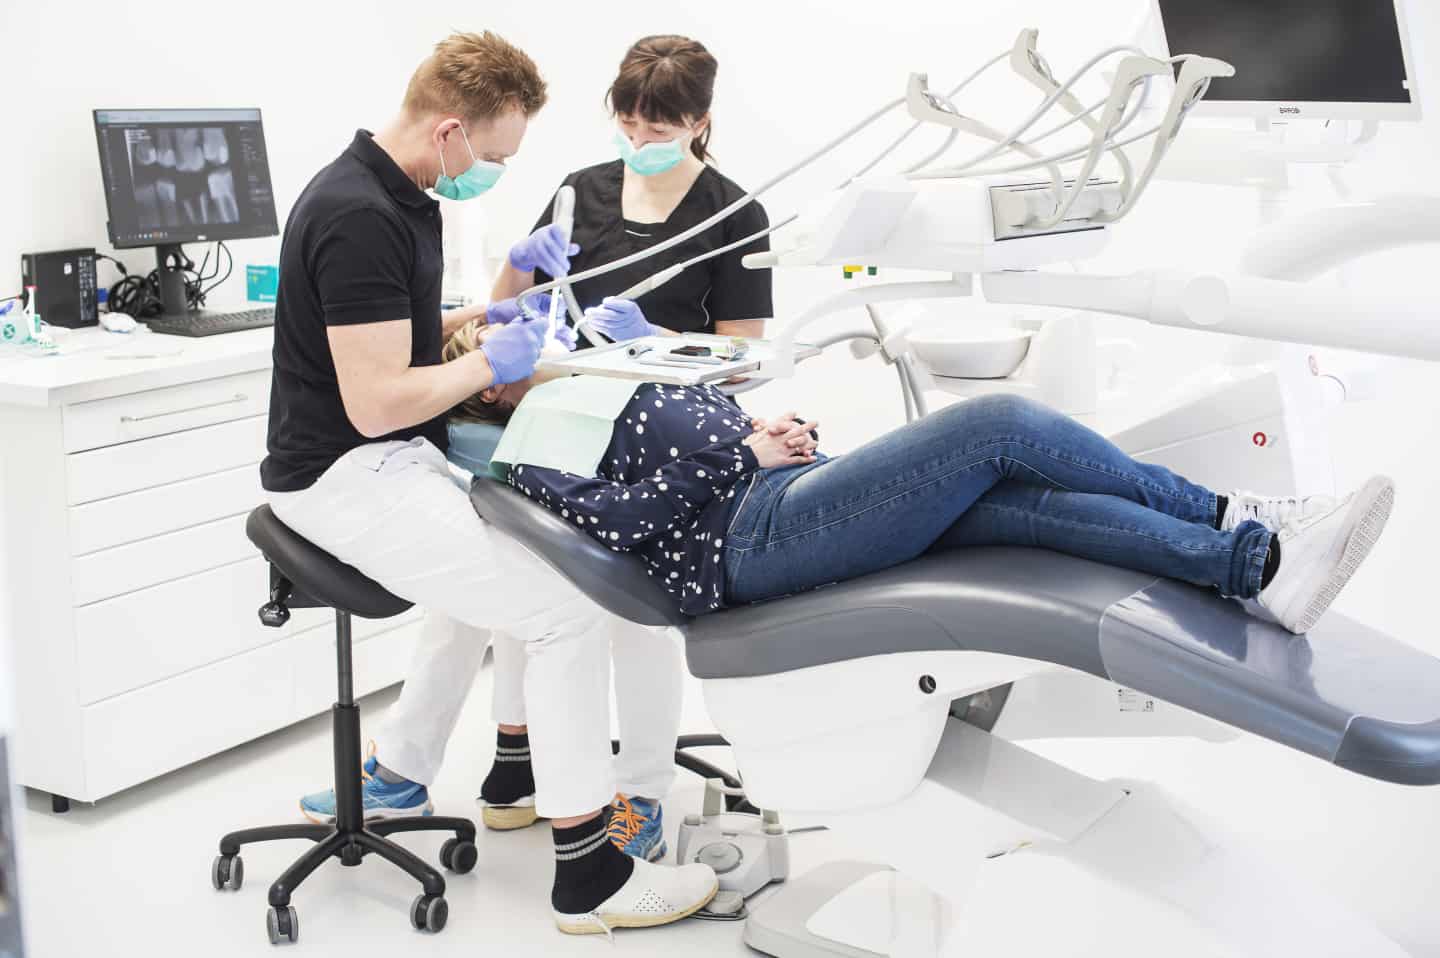 tandlægehus skruer priserne og op for det sociale engagement | amtsavisen.dk